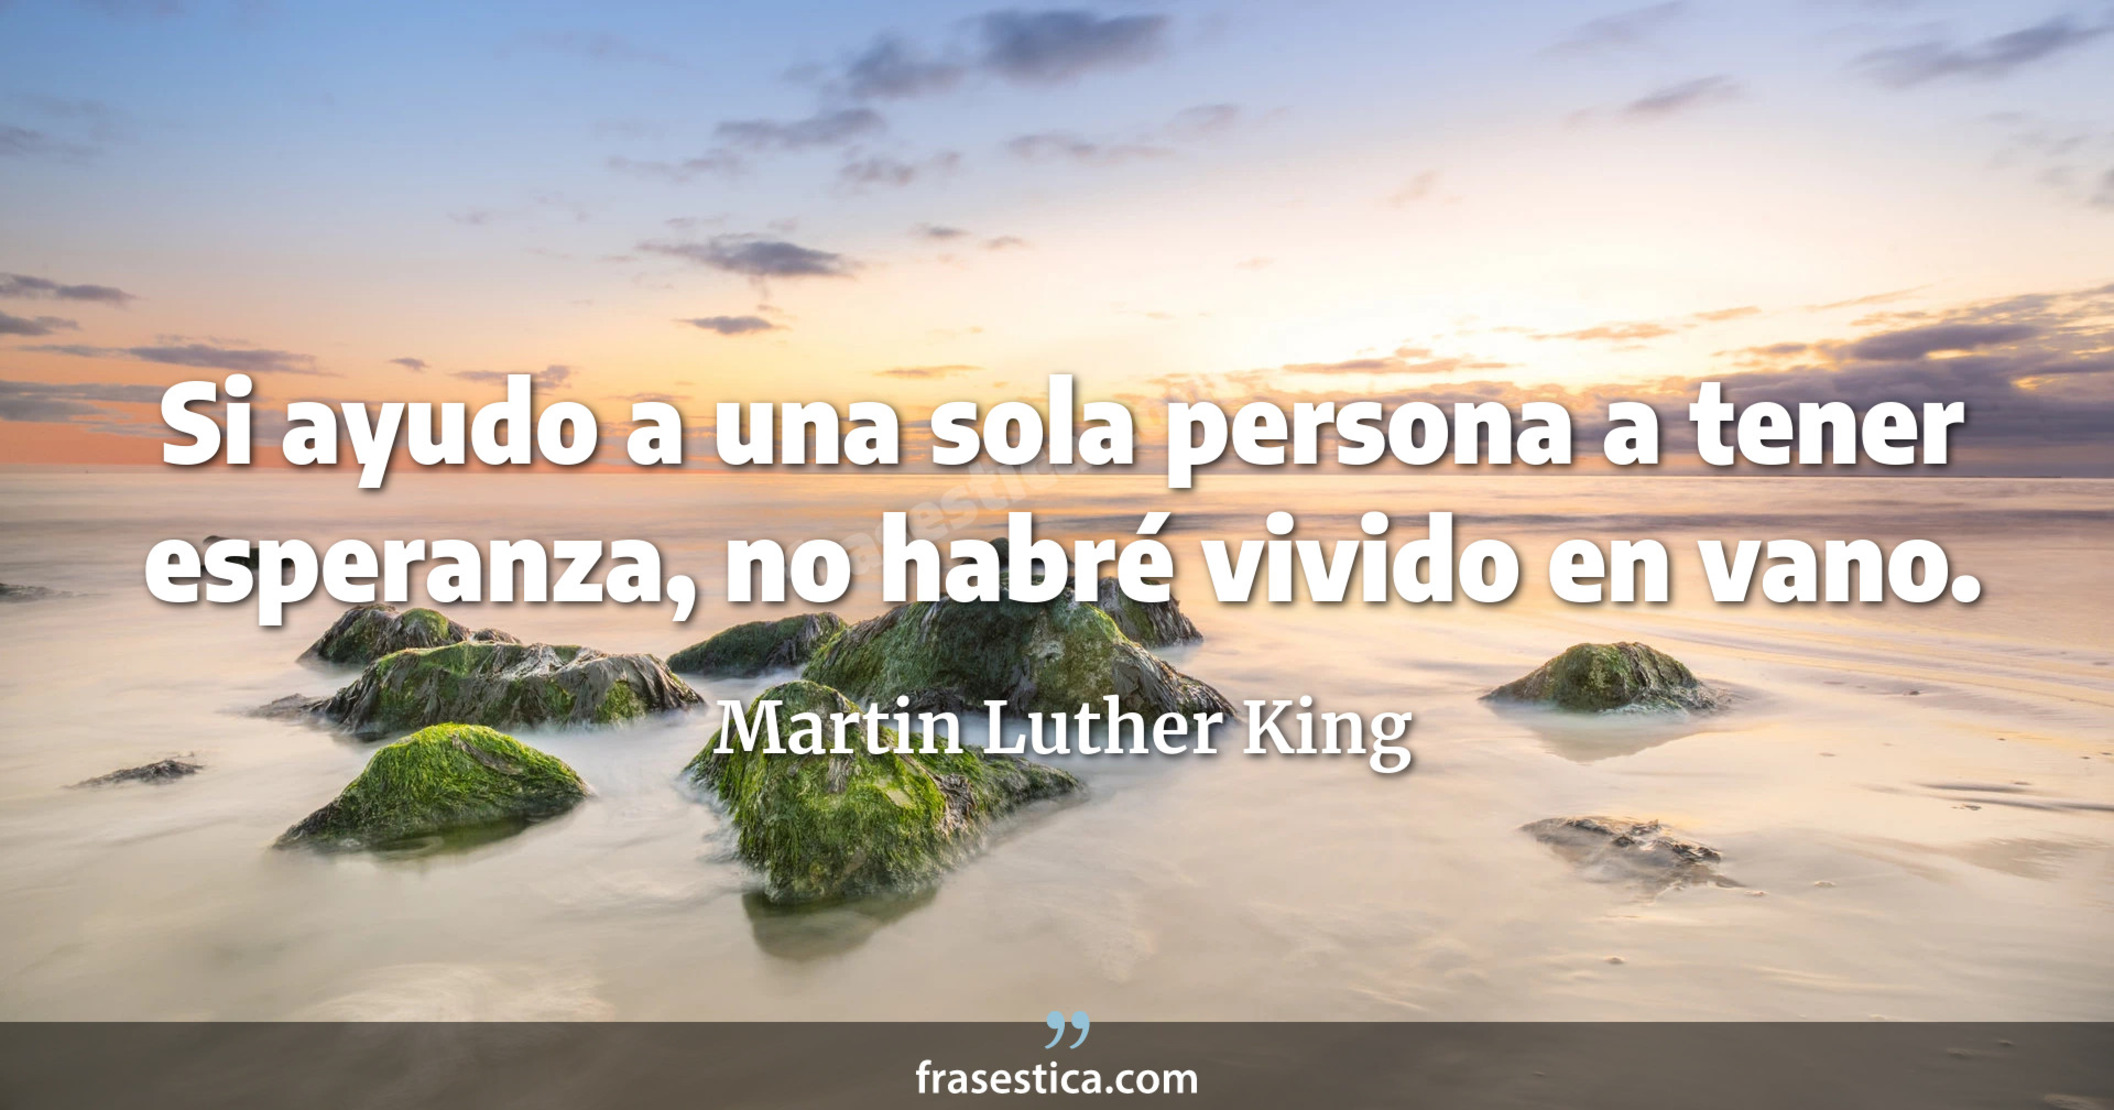 Si ayudo a una sola persona a tener esperanza, no habré vivido en vano. - Martin Luther King